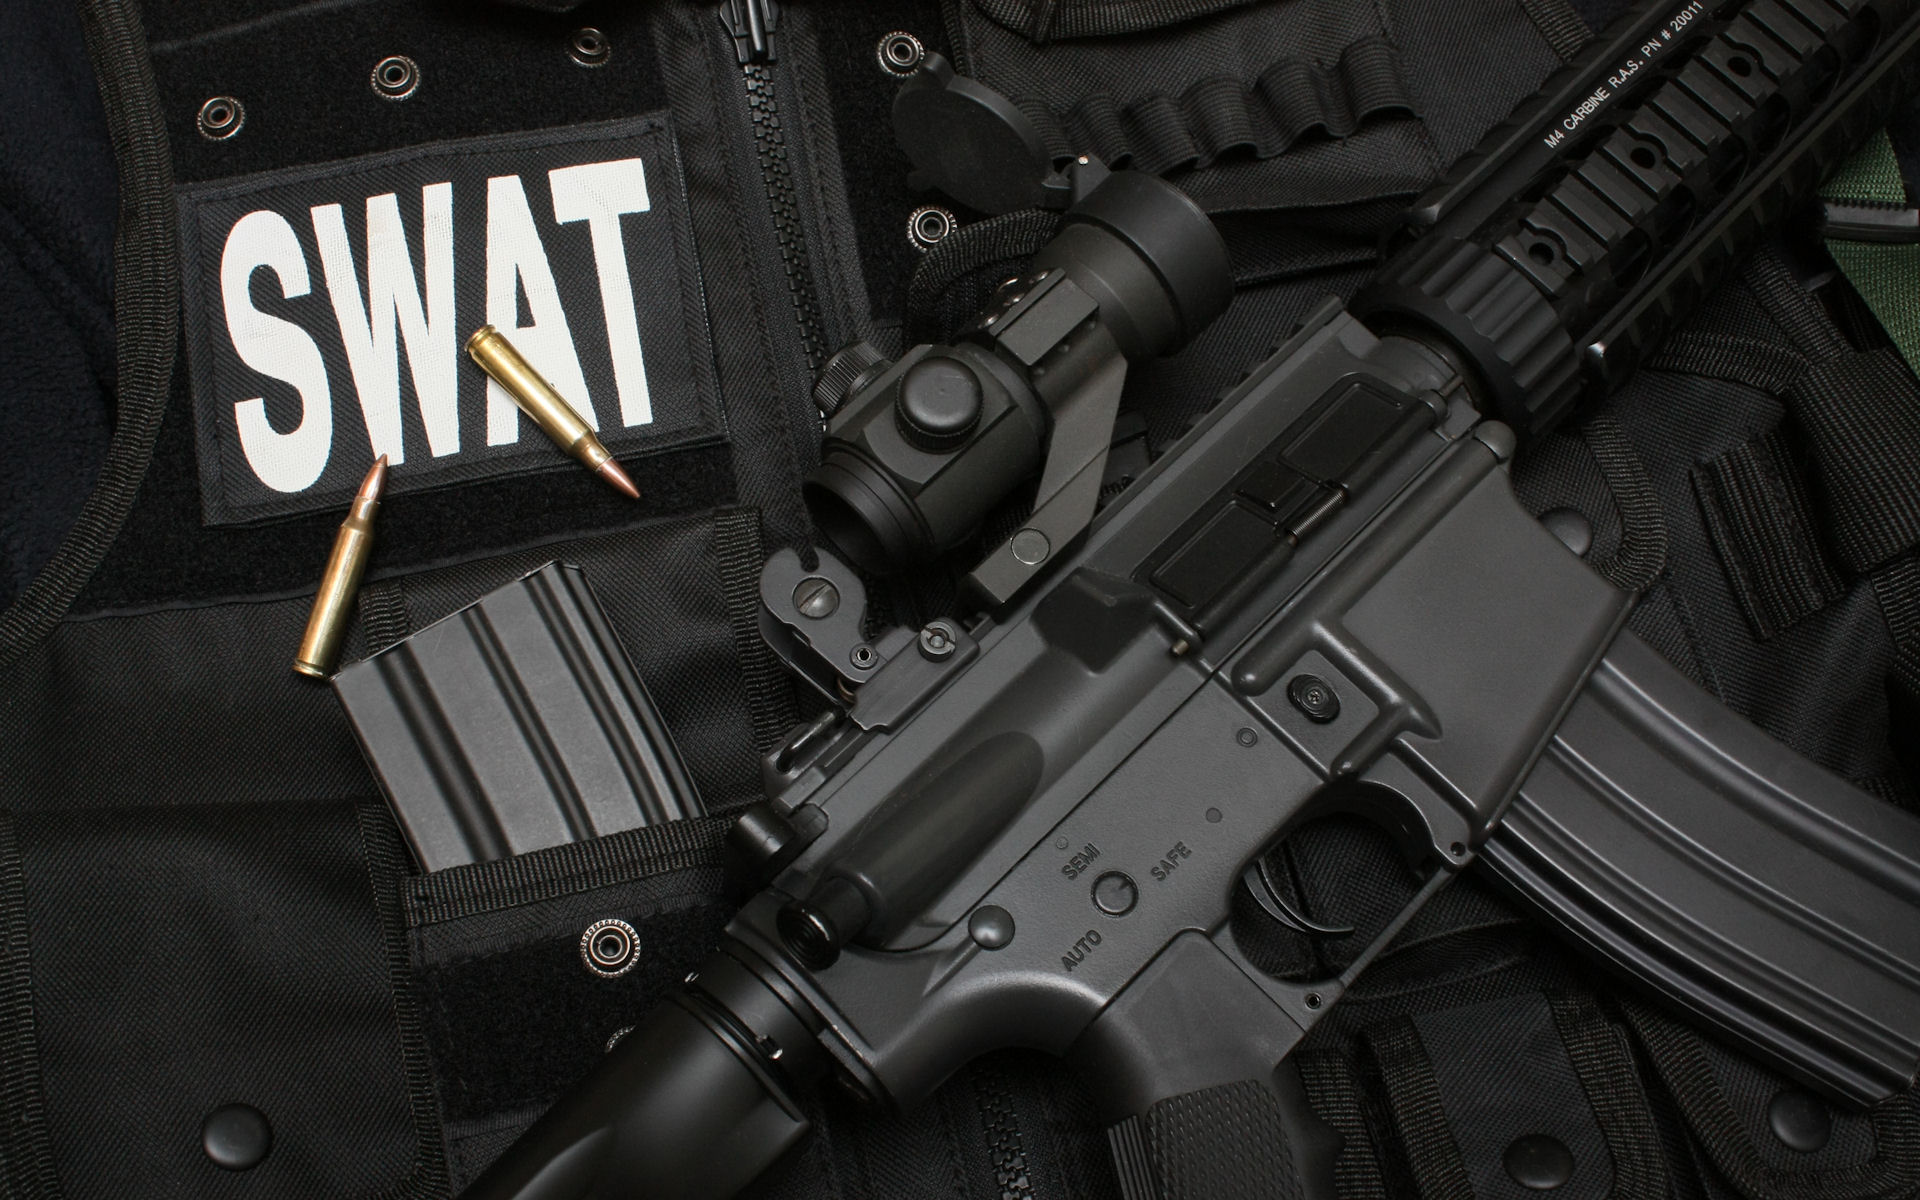 винтовки, пистолеты, SWAT, оружие, страйкбол пистолет - обои на рабочий стол